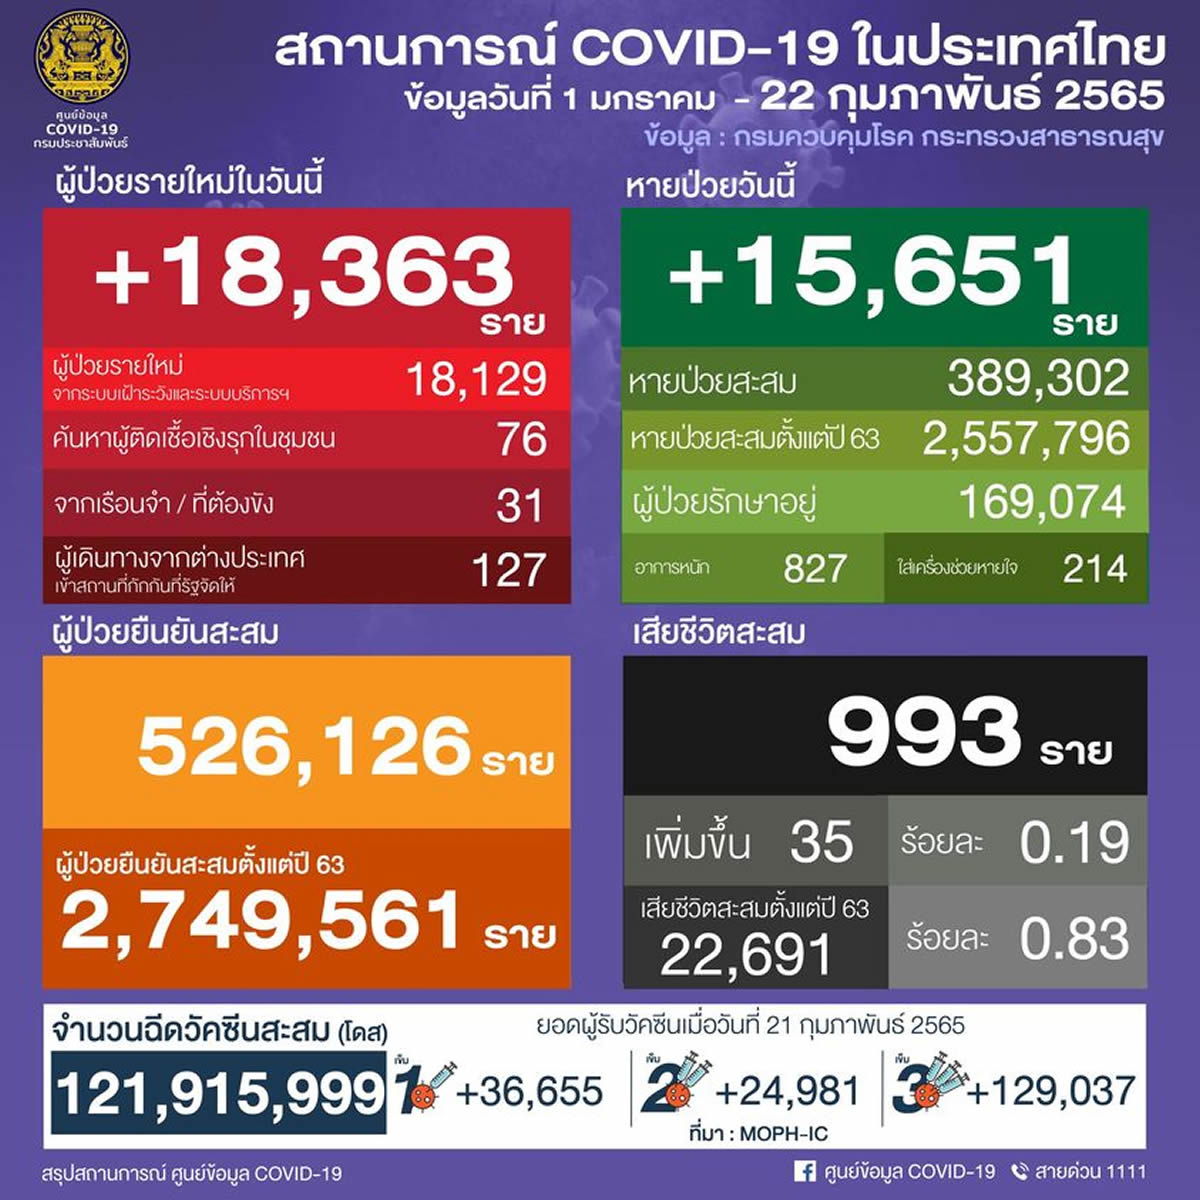 タイ 18,363人陽性 35人死亡／バンコク 2,638人陽性／チョンブリ 929人陽性／サムットプラカン 887人陽性［2022年2月22日発表］